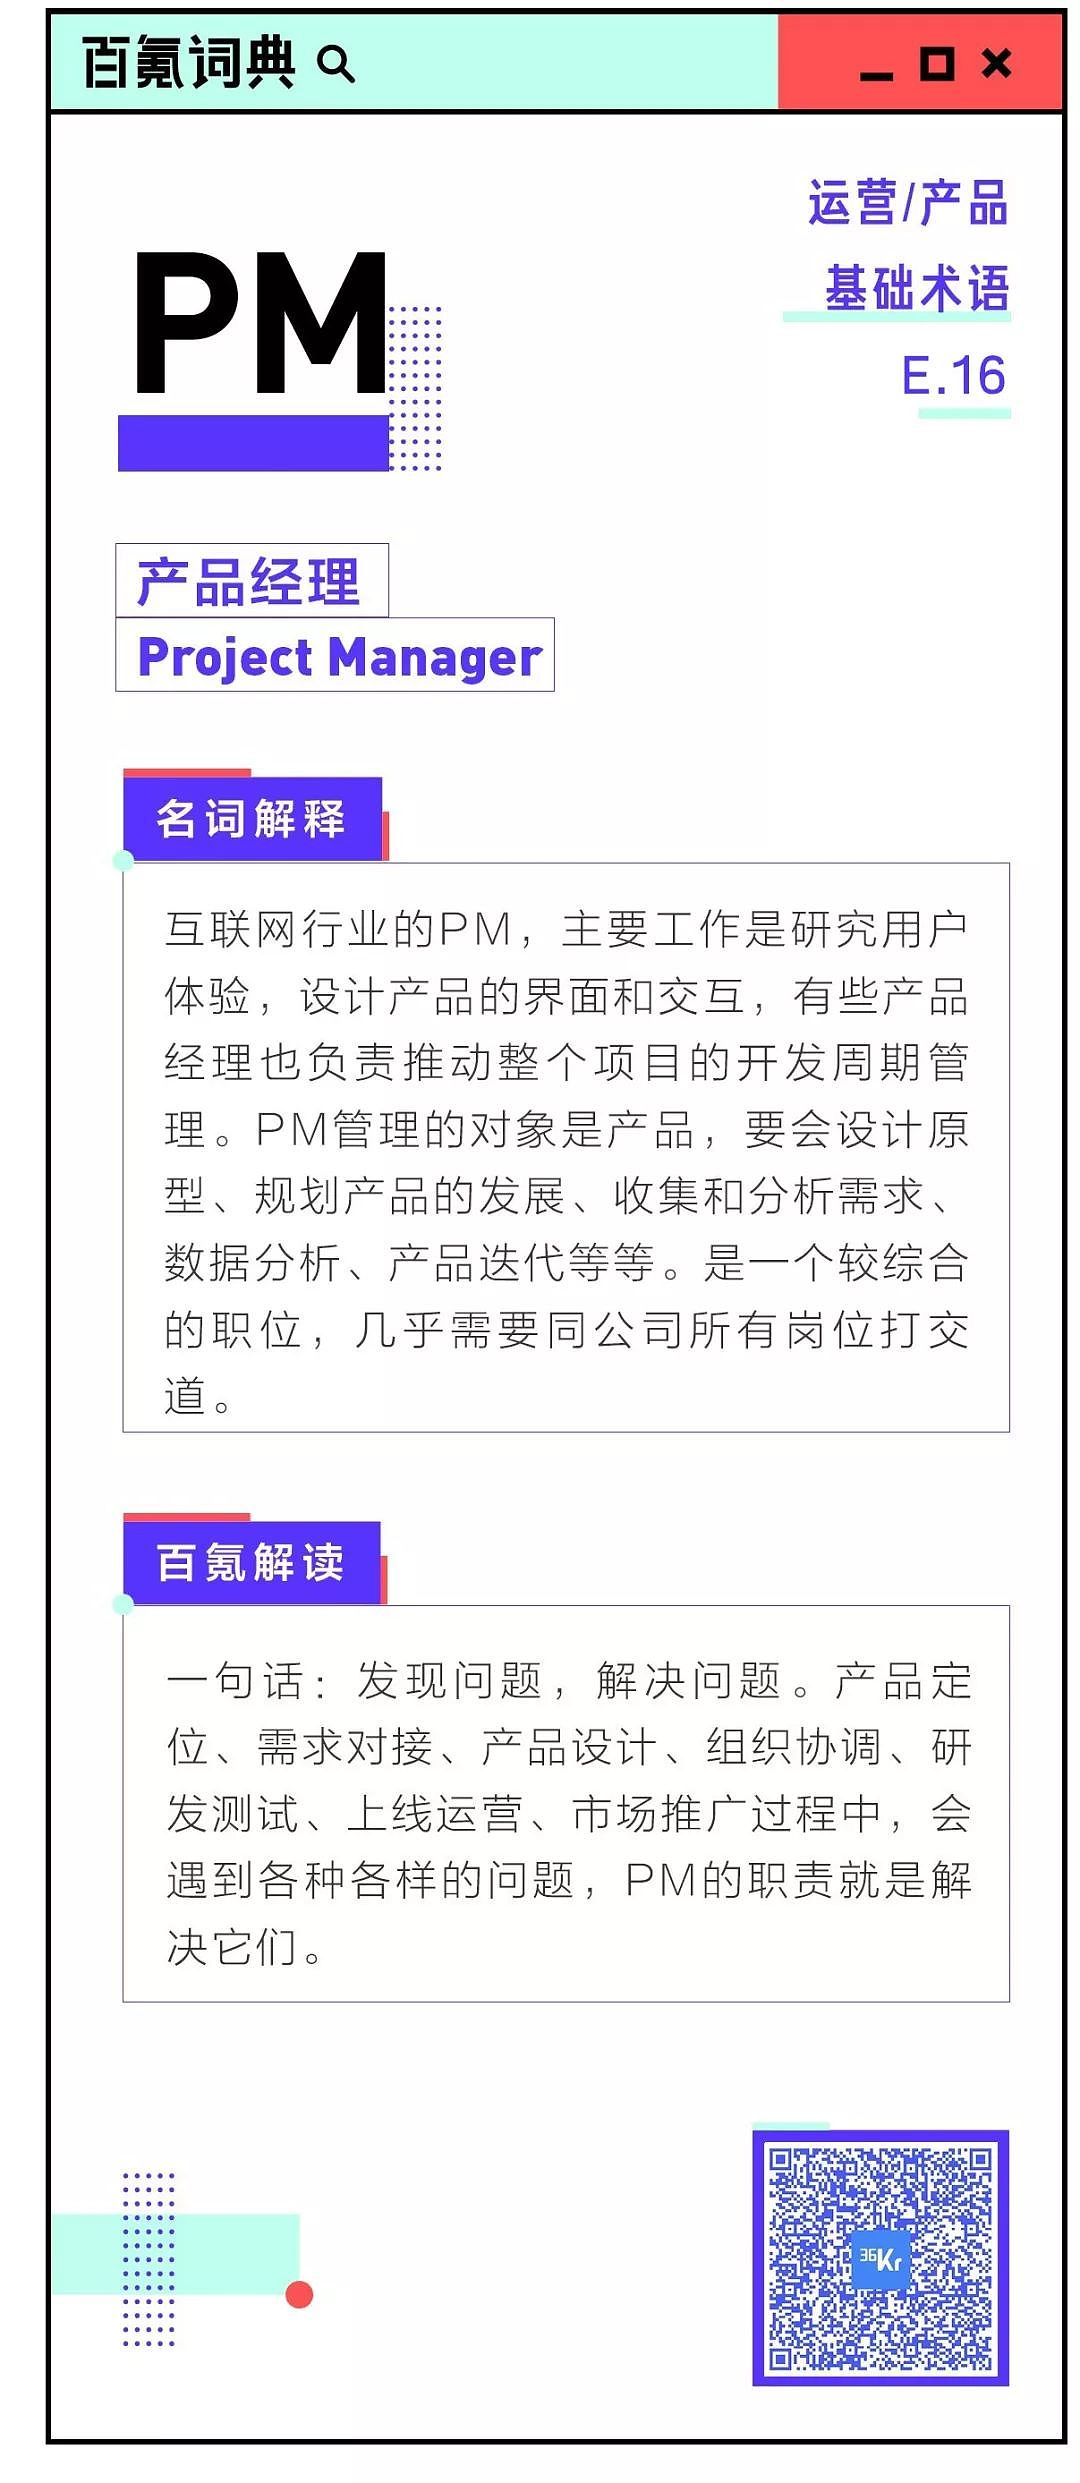 8点1氪：电信、联通暂停办理无限量套餐；暴风冯鑫被批捕；微博推出全新社交产品“绿洲” - 13